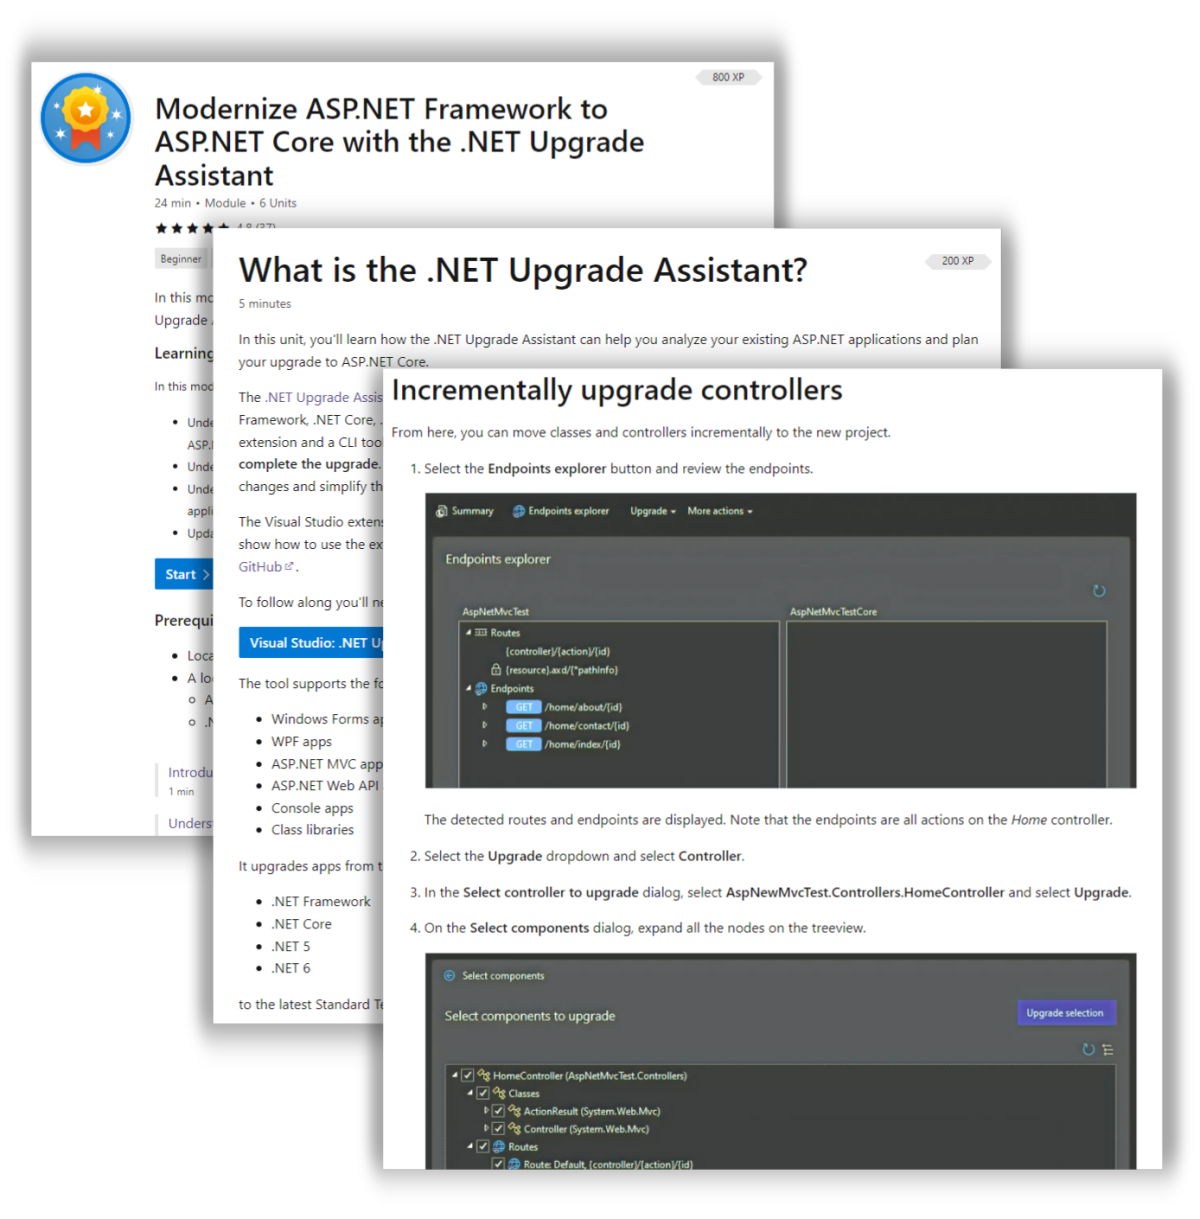 Screenshots of ASP.NET Modernization Learn Module